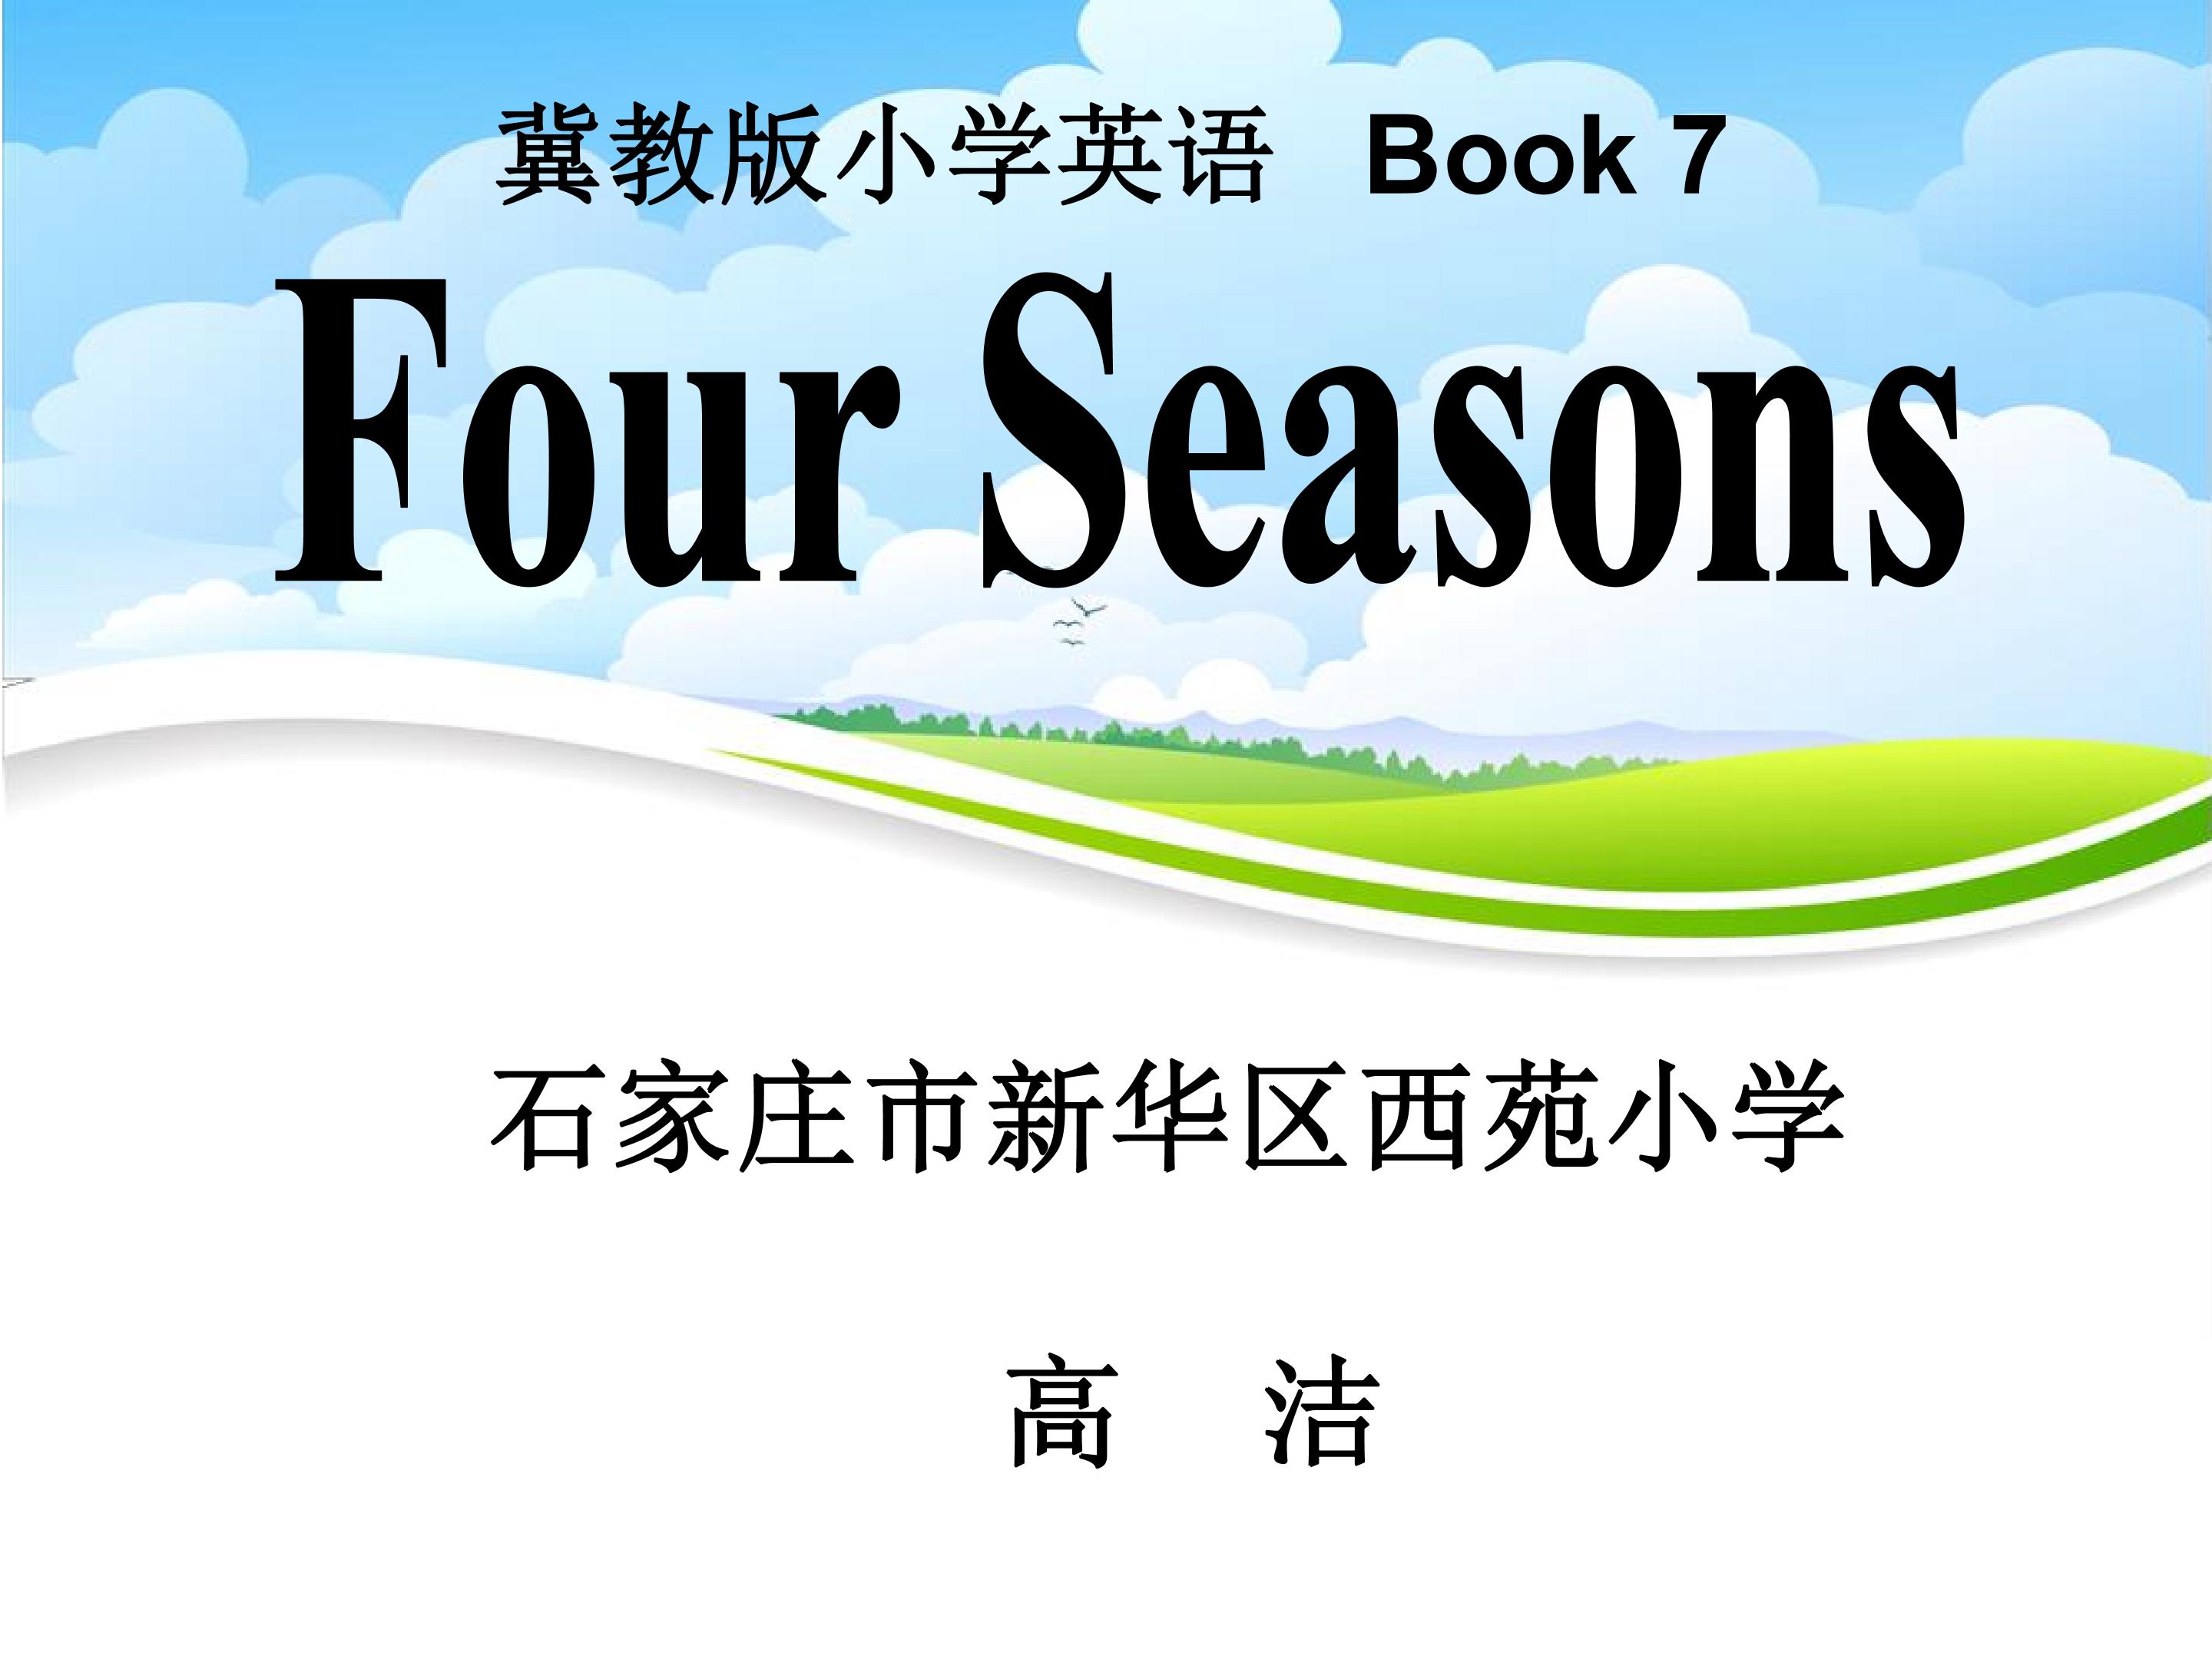 冀教版小学英语六年级上册故事课Four Seasons